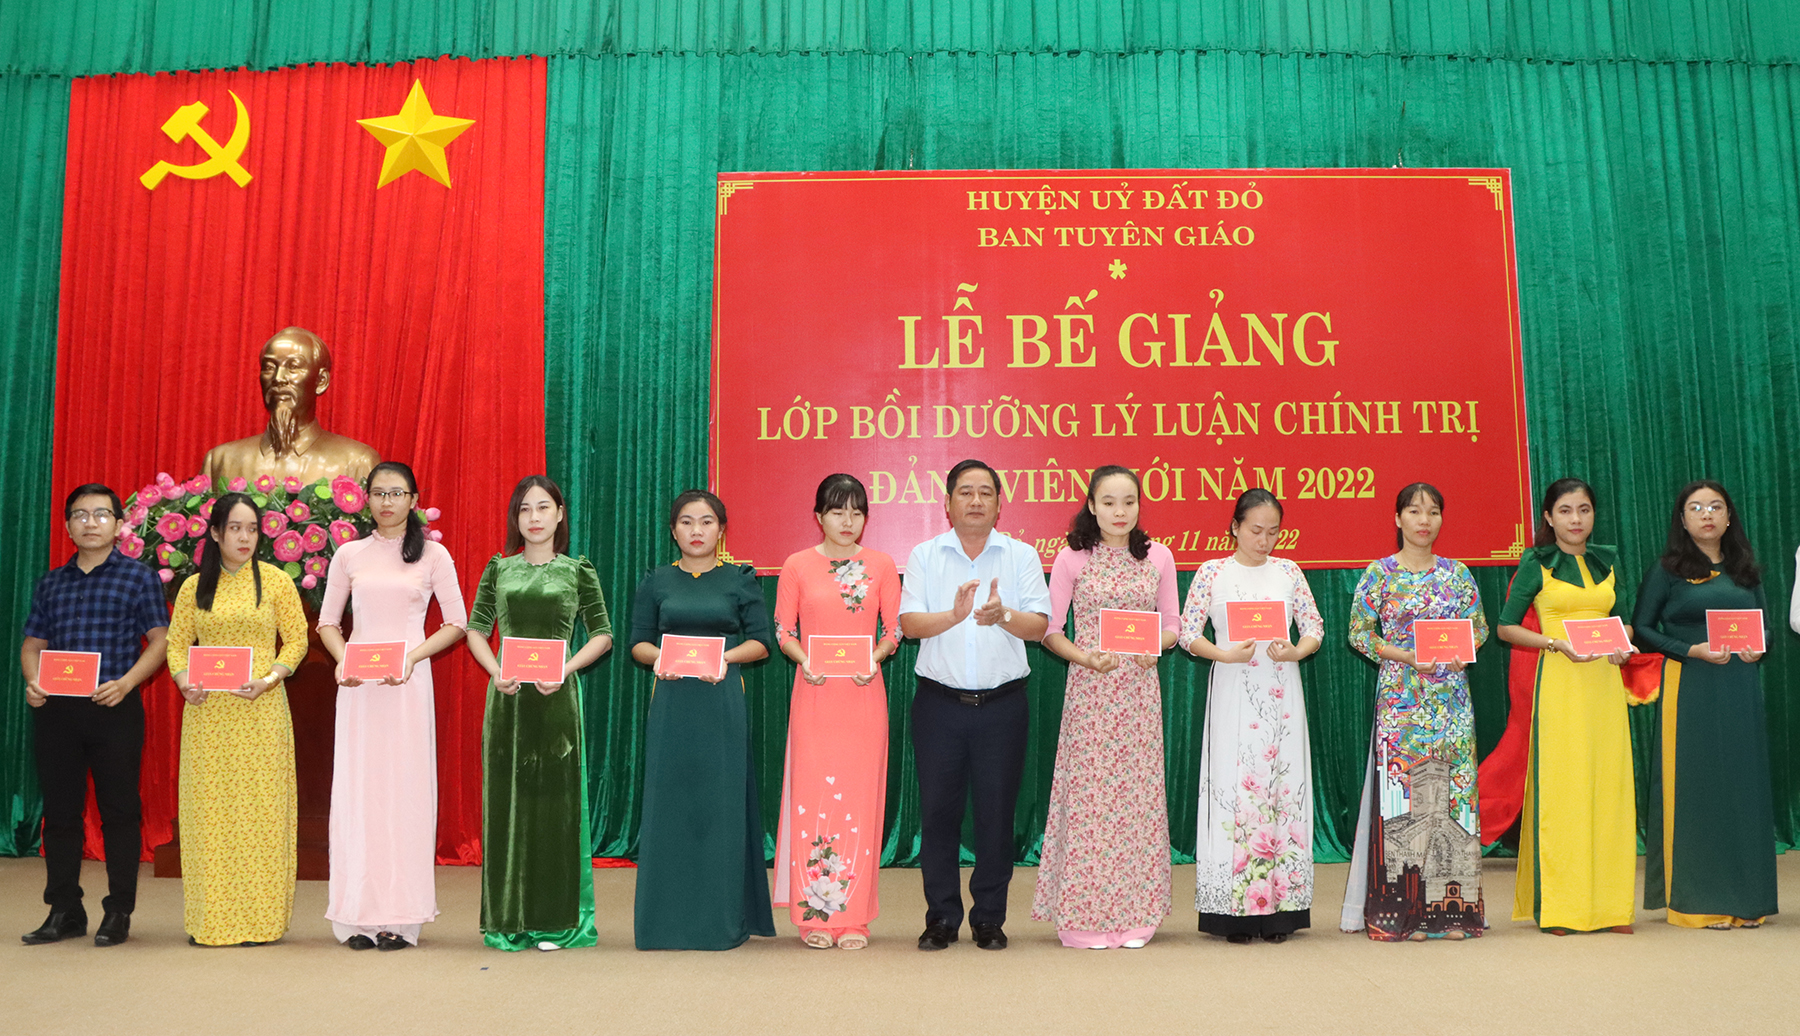 Ông Trần Thanh Hùng, Phó Bí thư Thường trực Huyện ủy Đất Đỏ trao giấy chứng nhận cho học viên.